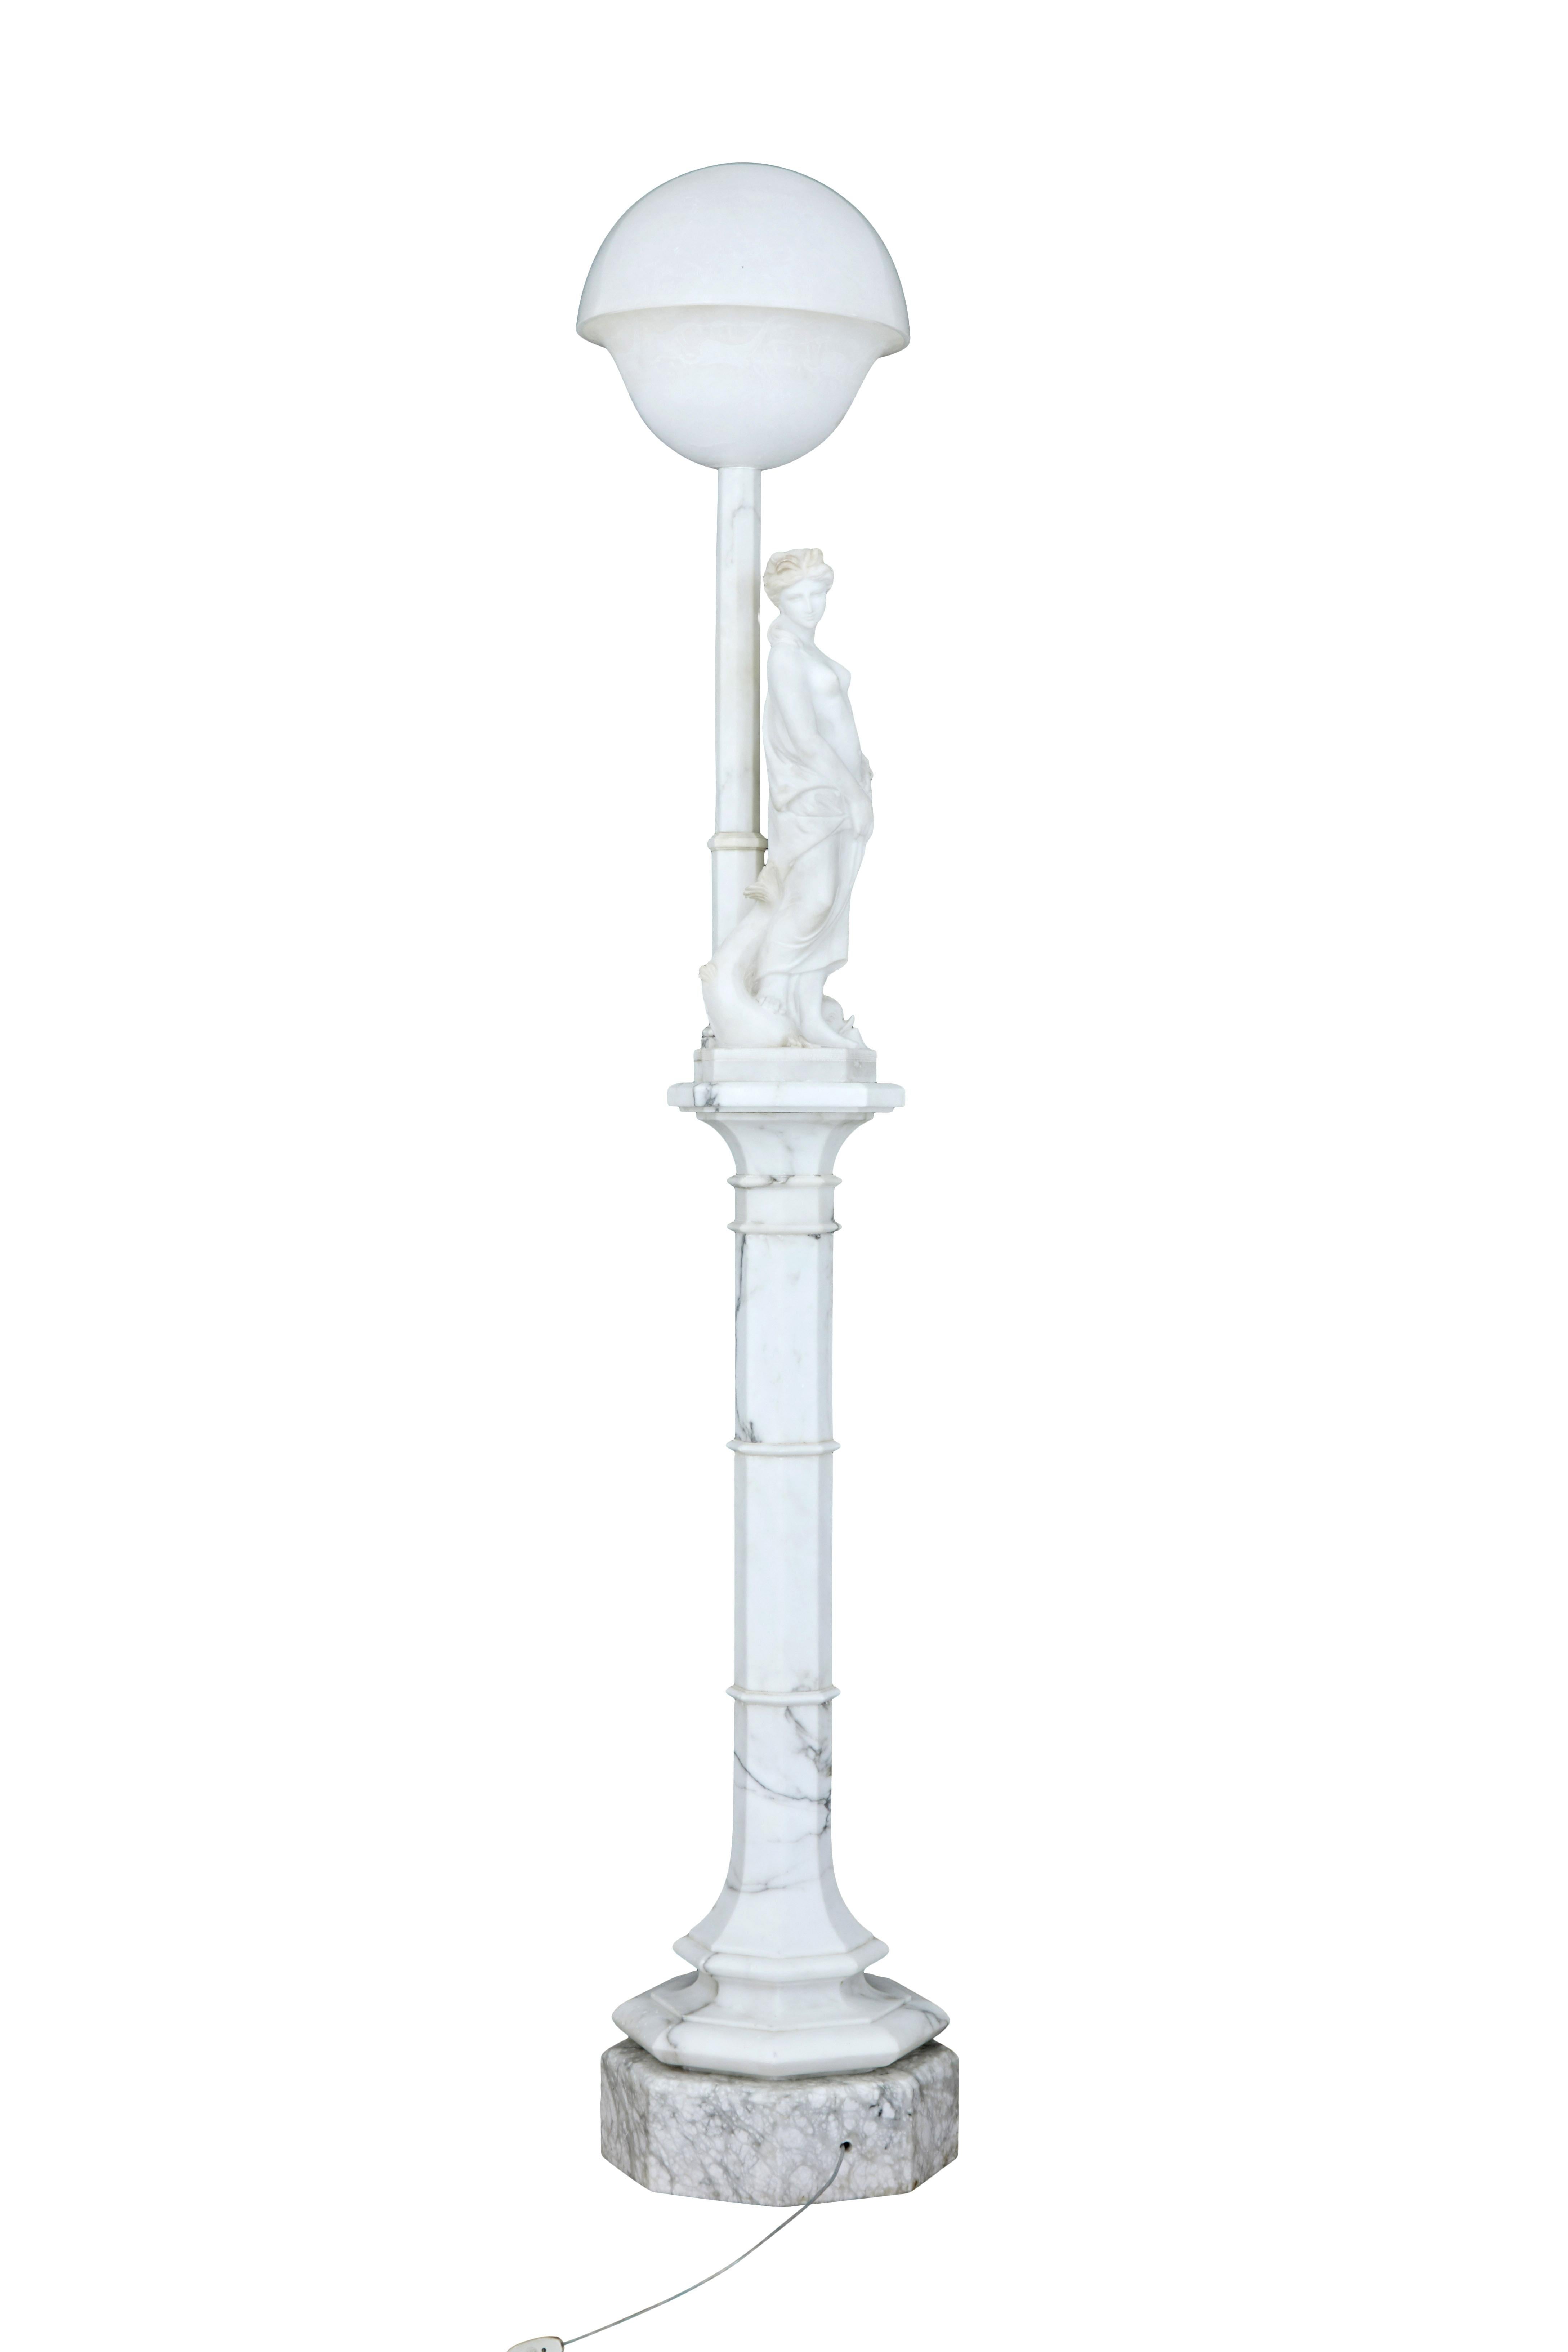 Lampe figurative suédoise en albâtre, très décorative, datant du début du 20e siècle, représentant une femme vêtue, une créature marine mythique à ses pieds et une grande lampe en forme de dôme au-dessus d'elle, soutenue par une colonne octogonale